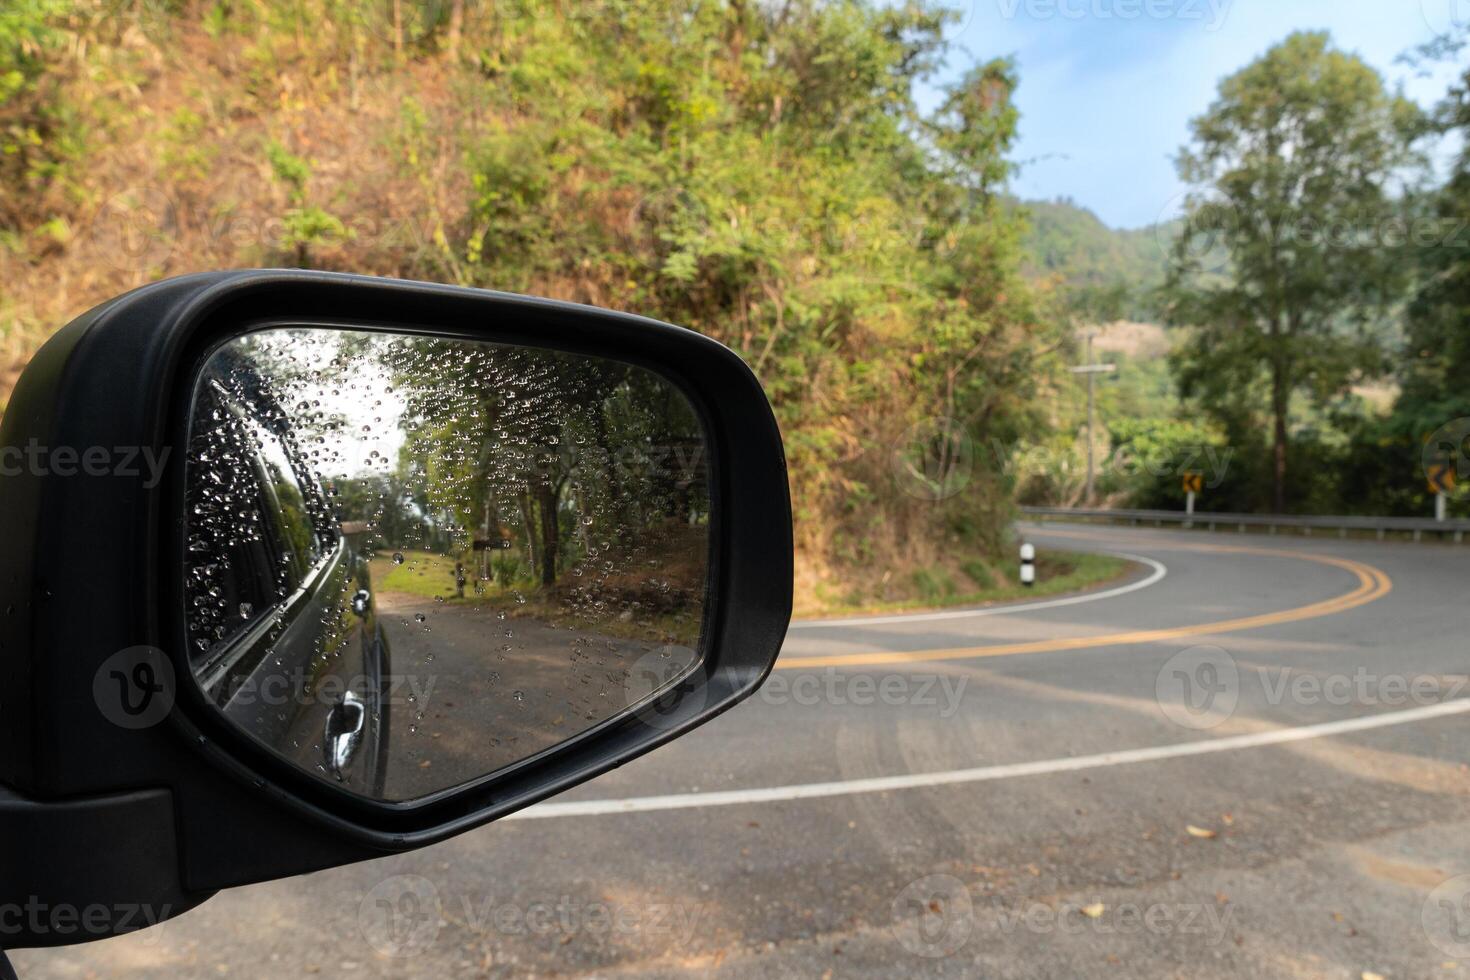 se av spegel bil kan se sida av bil se Bakom. böjd utför asfalt väg med bergen Nästa till den och vår lövverk. skog träd under de blå himmel. foto